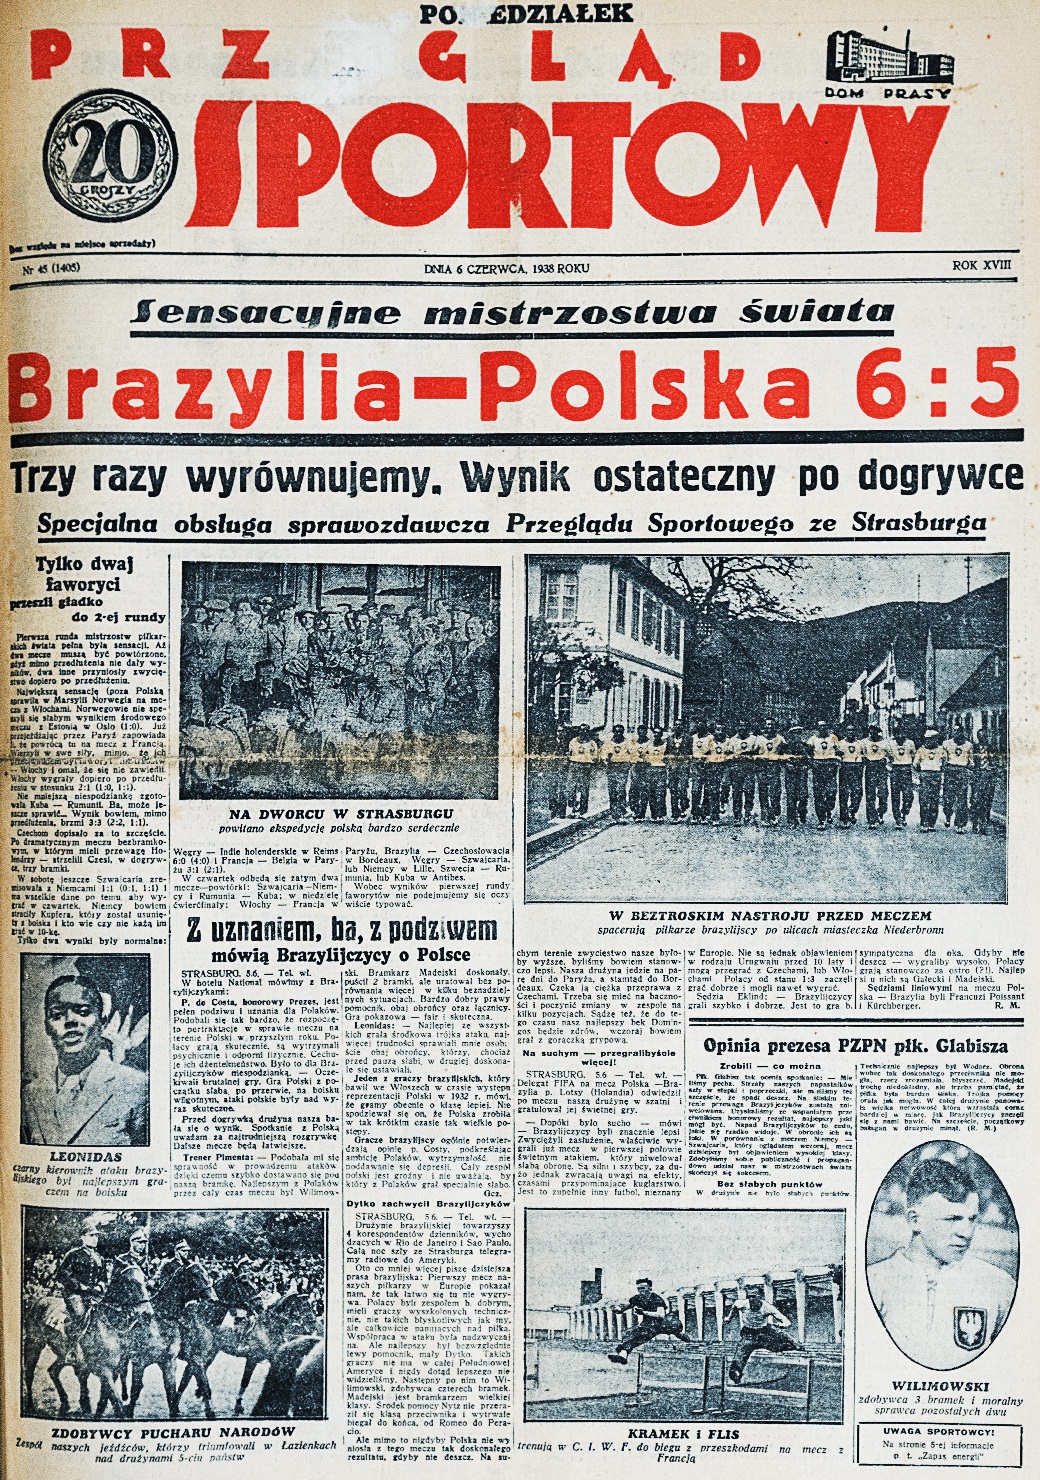 Okładka Przeglad Sportowy o meczu Brazylia - Polska 6-5 (05.06.1938)